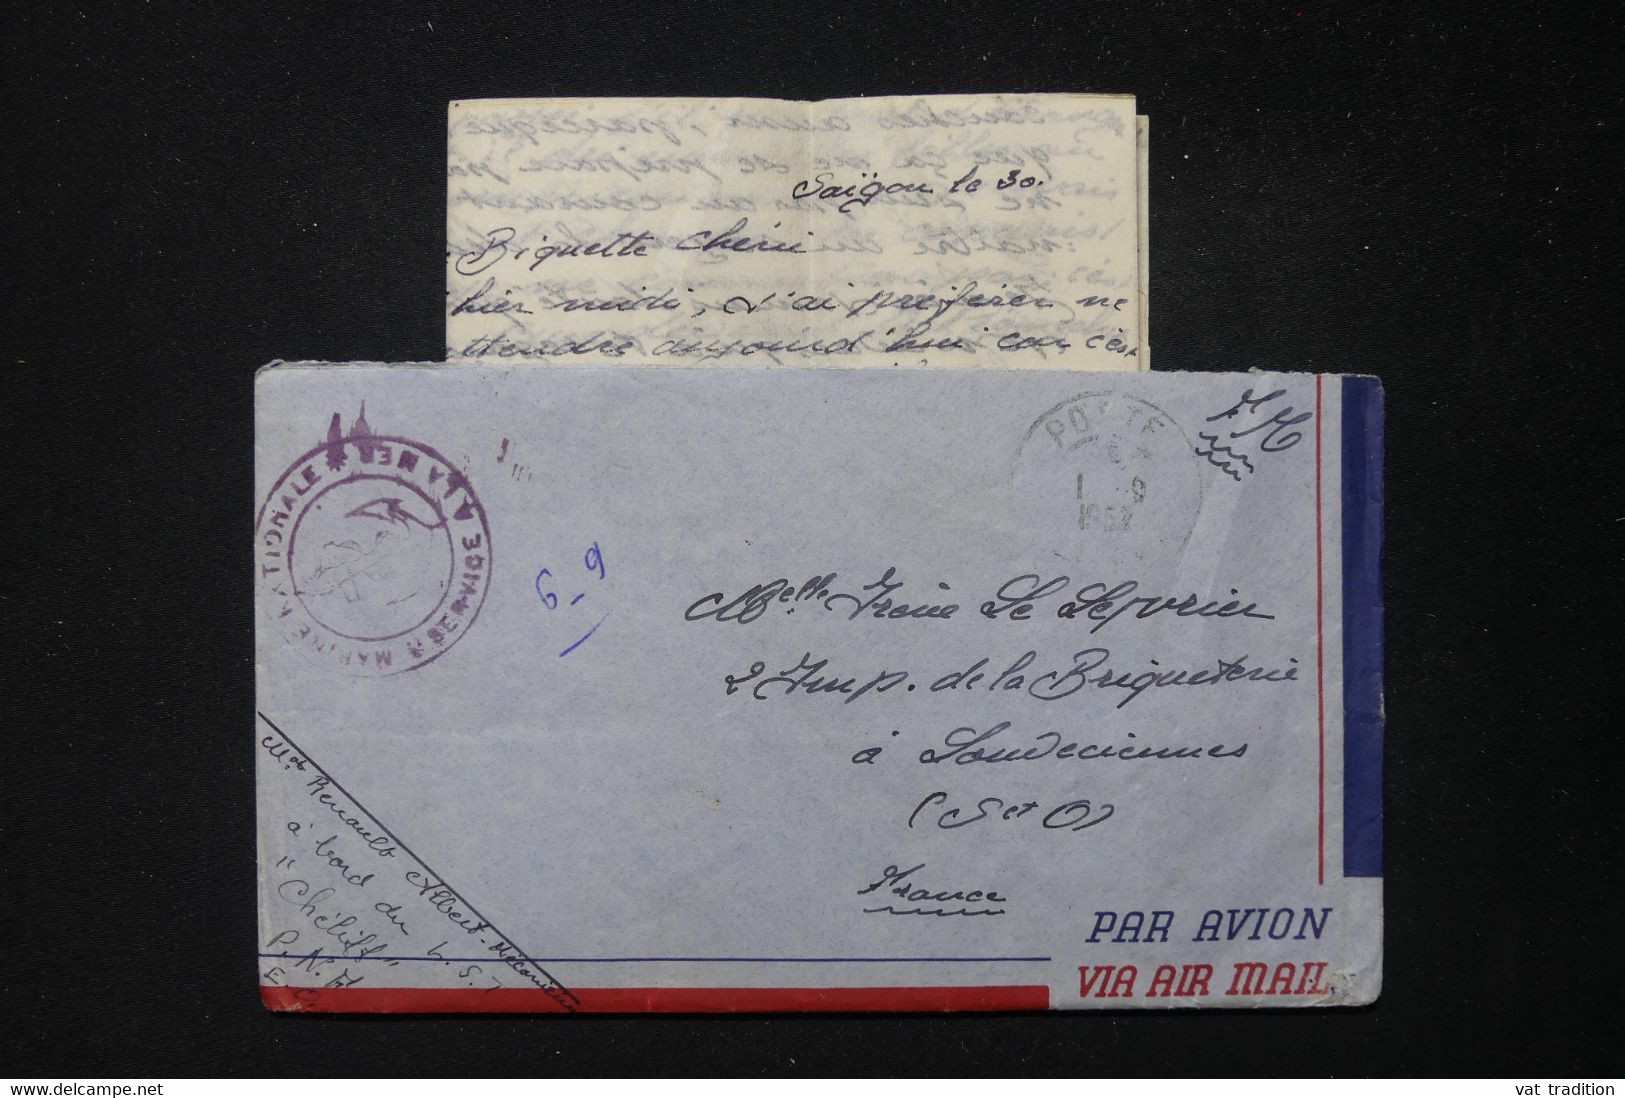 FRANCE / INDOCHINE - Enveloppe Avec Contenu D'un Marin En Indochine En 1952 Pour La France - L 83853 - Guerra D'Indocina/Vietnam